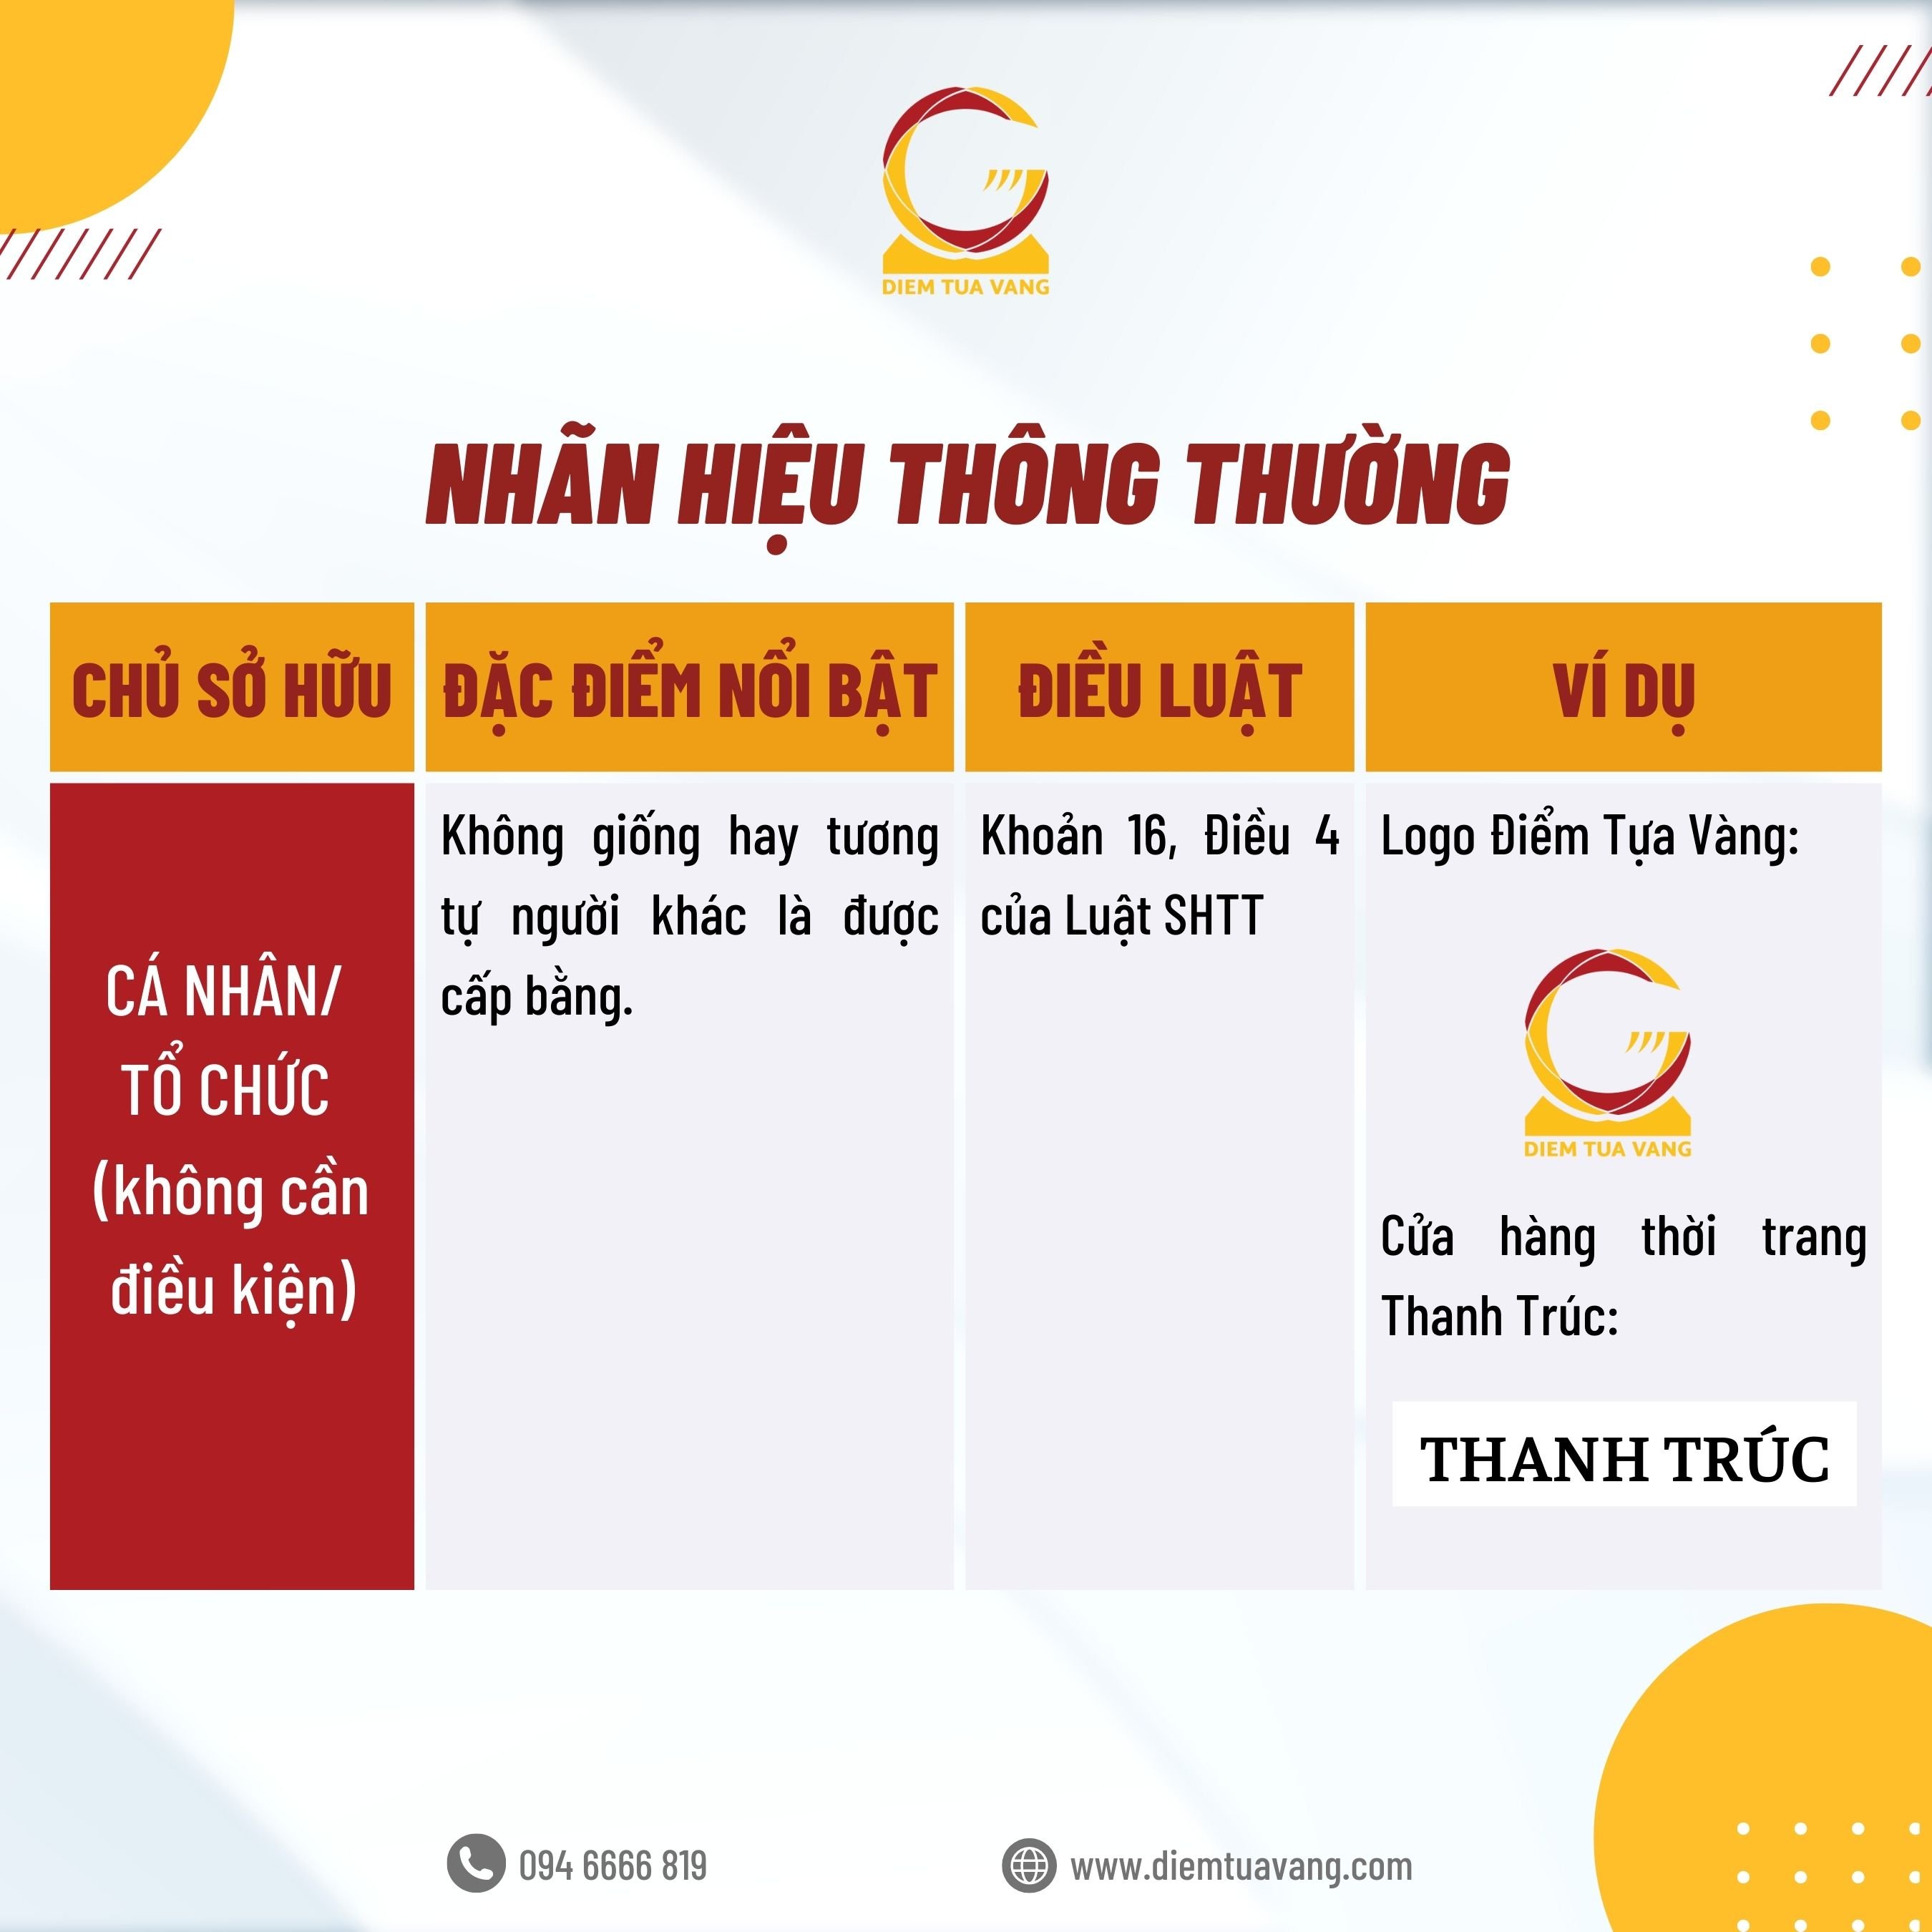 1. Nh Thong Thuong